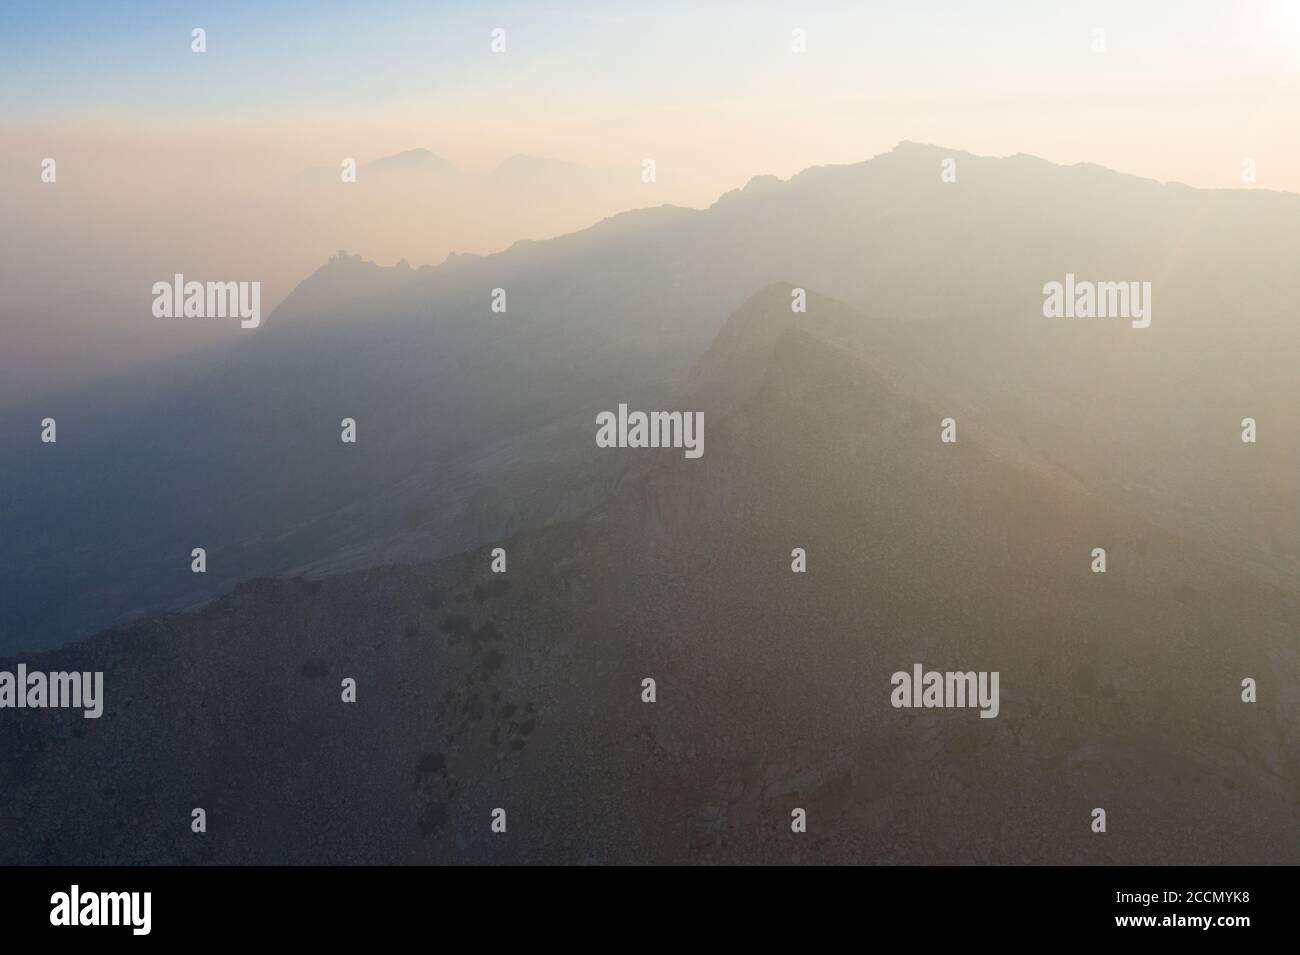 Sunrise saluda los picos de alta elevación en las montañas de Sierra Nevada. Estas hermosas montañas de granito corren a lo largo del borde este de California. Foto de stock